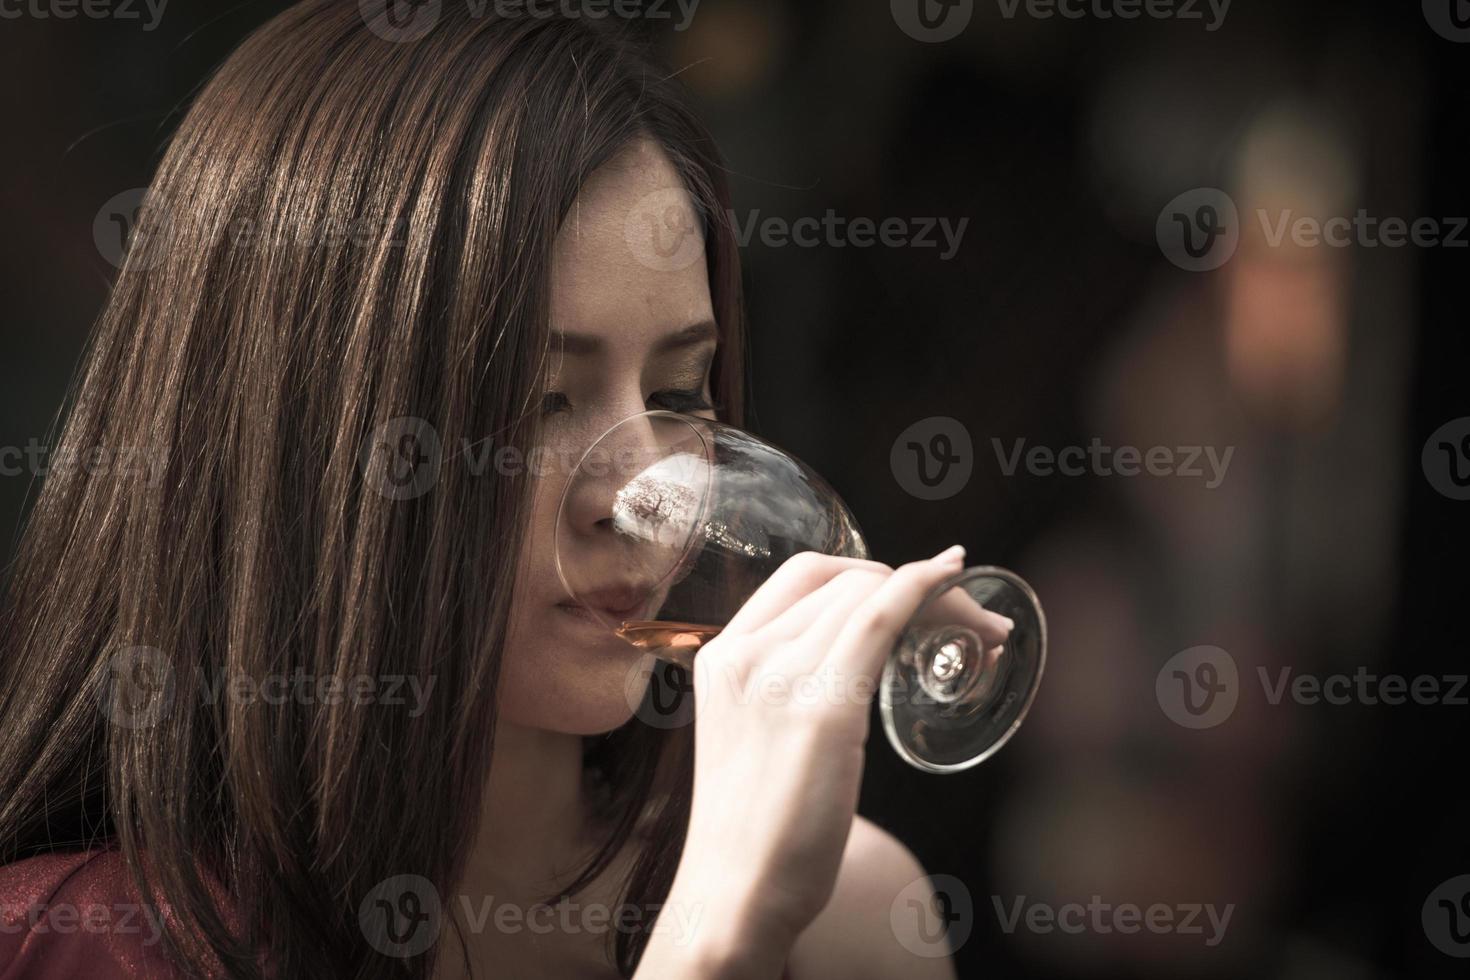 nouvel an, noël, célébrations de fête de nuit concept jeune femme asiatique heureuse tenant et buvant un verre d'alcool au bar de nuit ou à la discothèque. photo